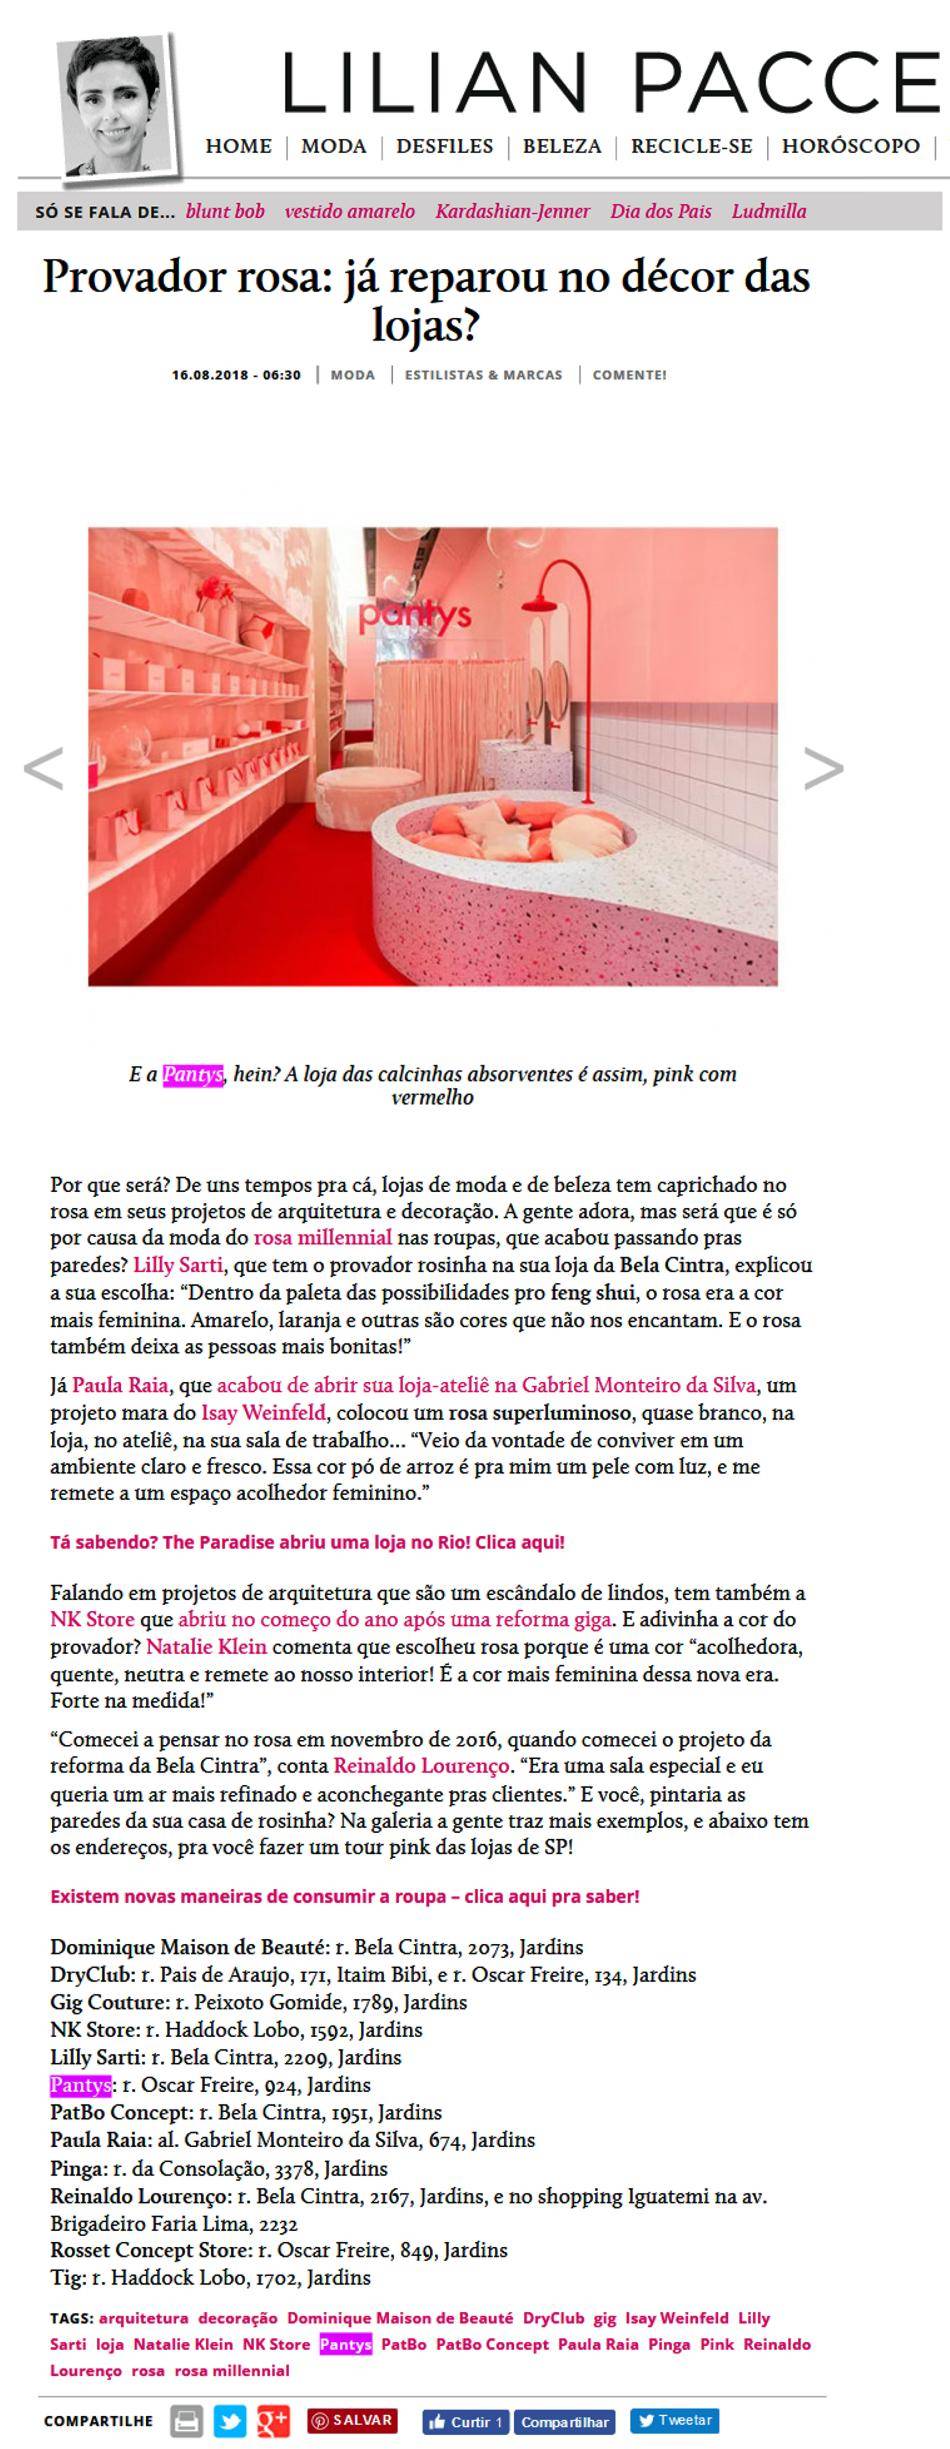 Pagina do site Lilian Pacce mostrando um banheiro com o interior rosa.